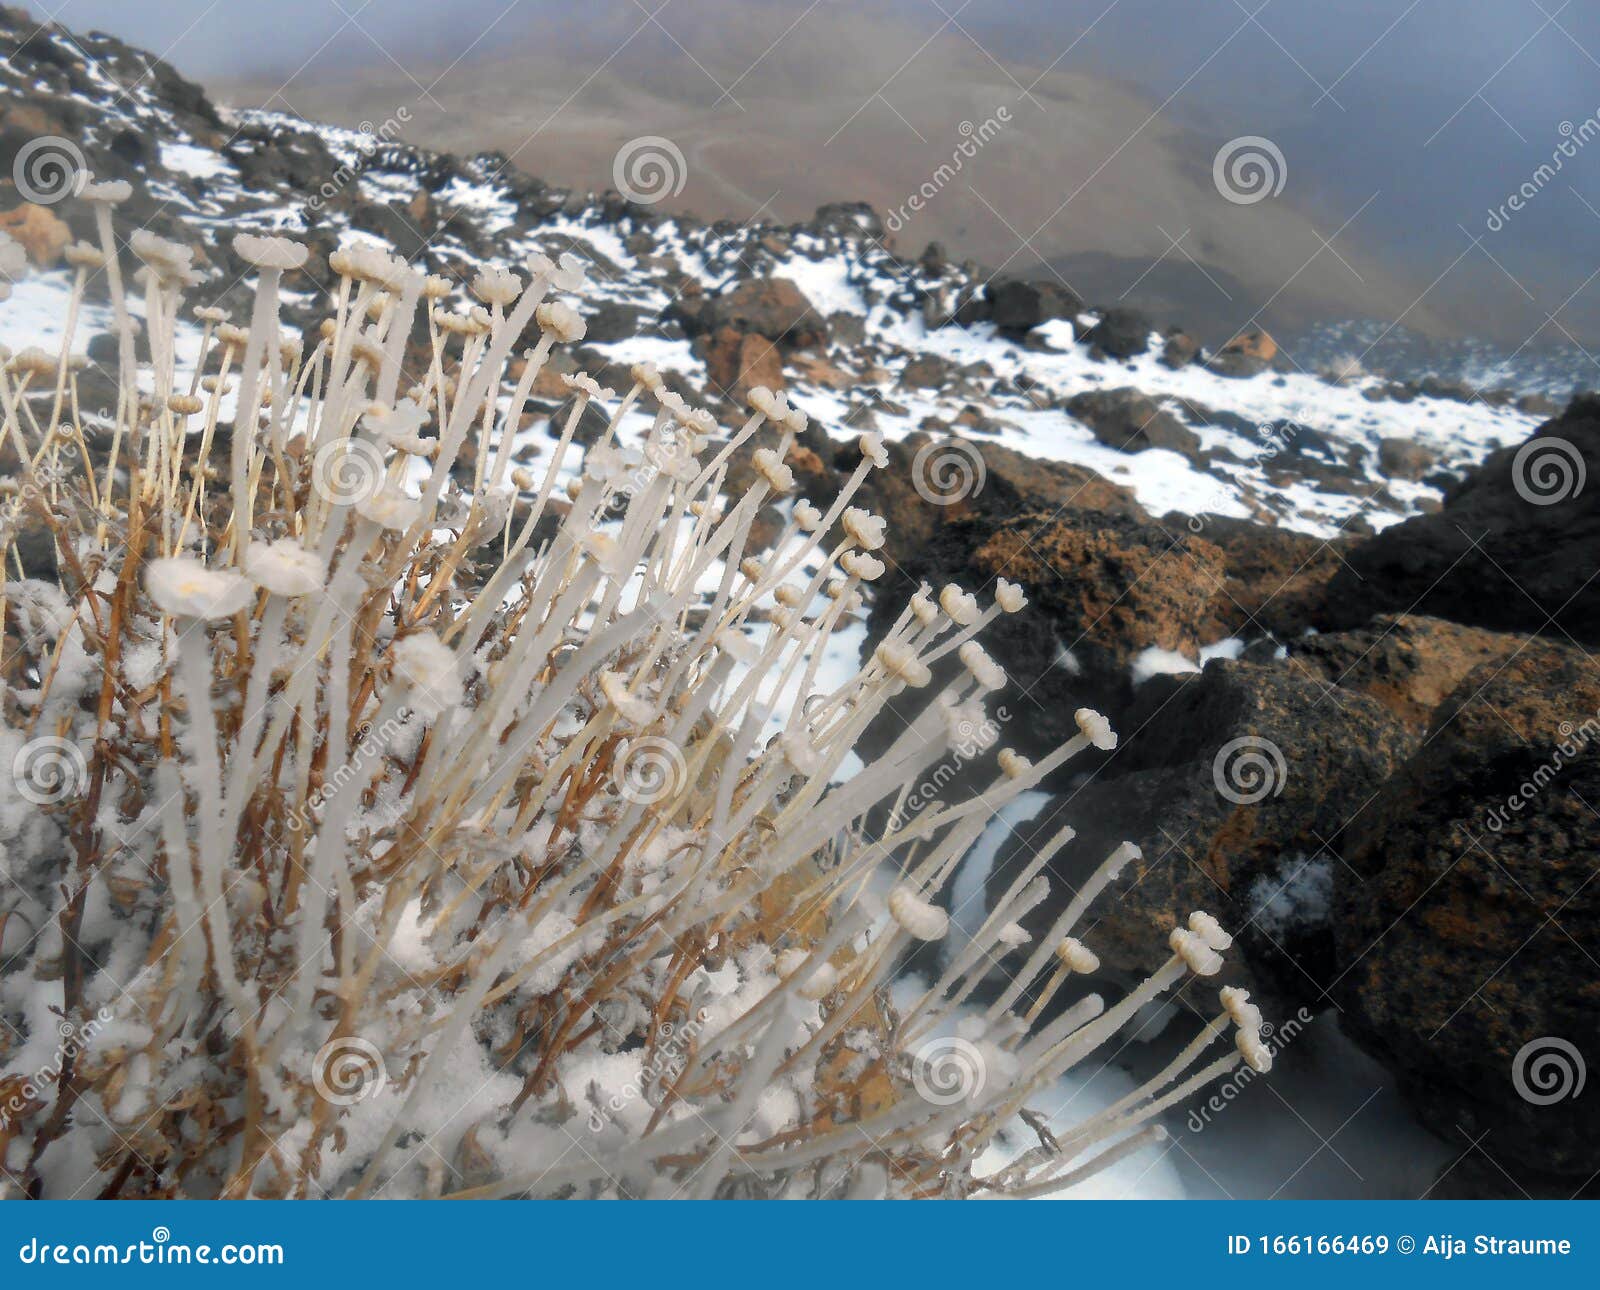 spain tenerife teide national park refuge altavista montana blanca pico del teide